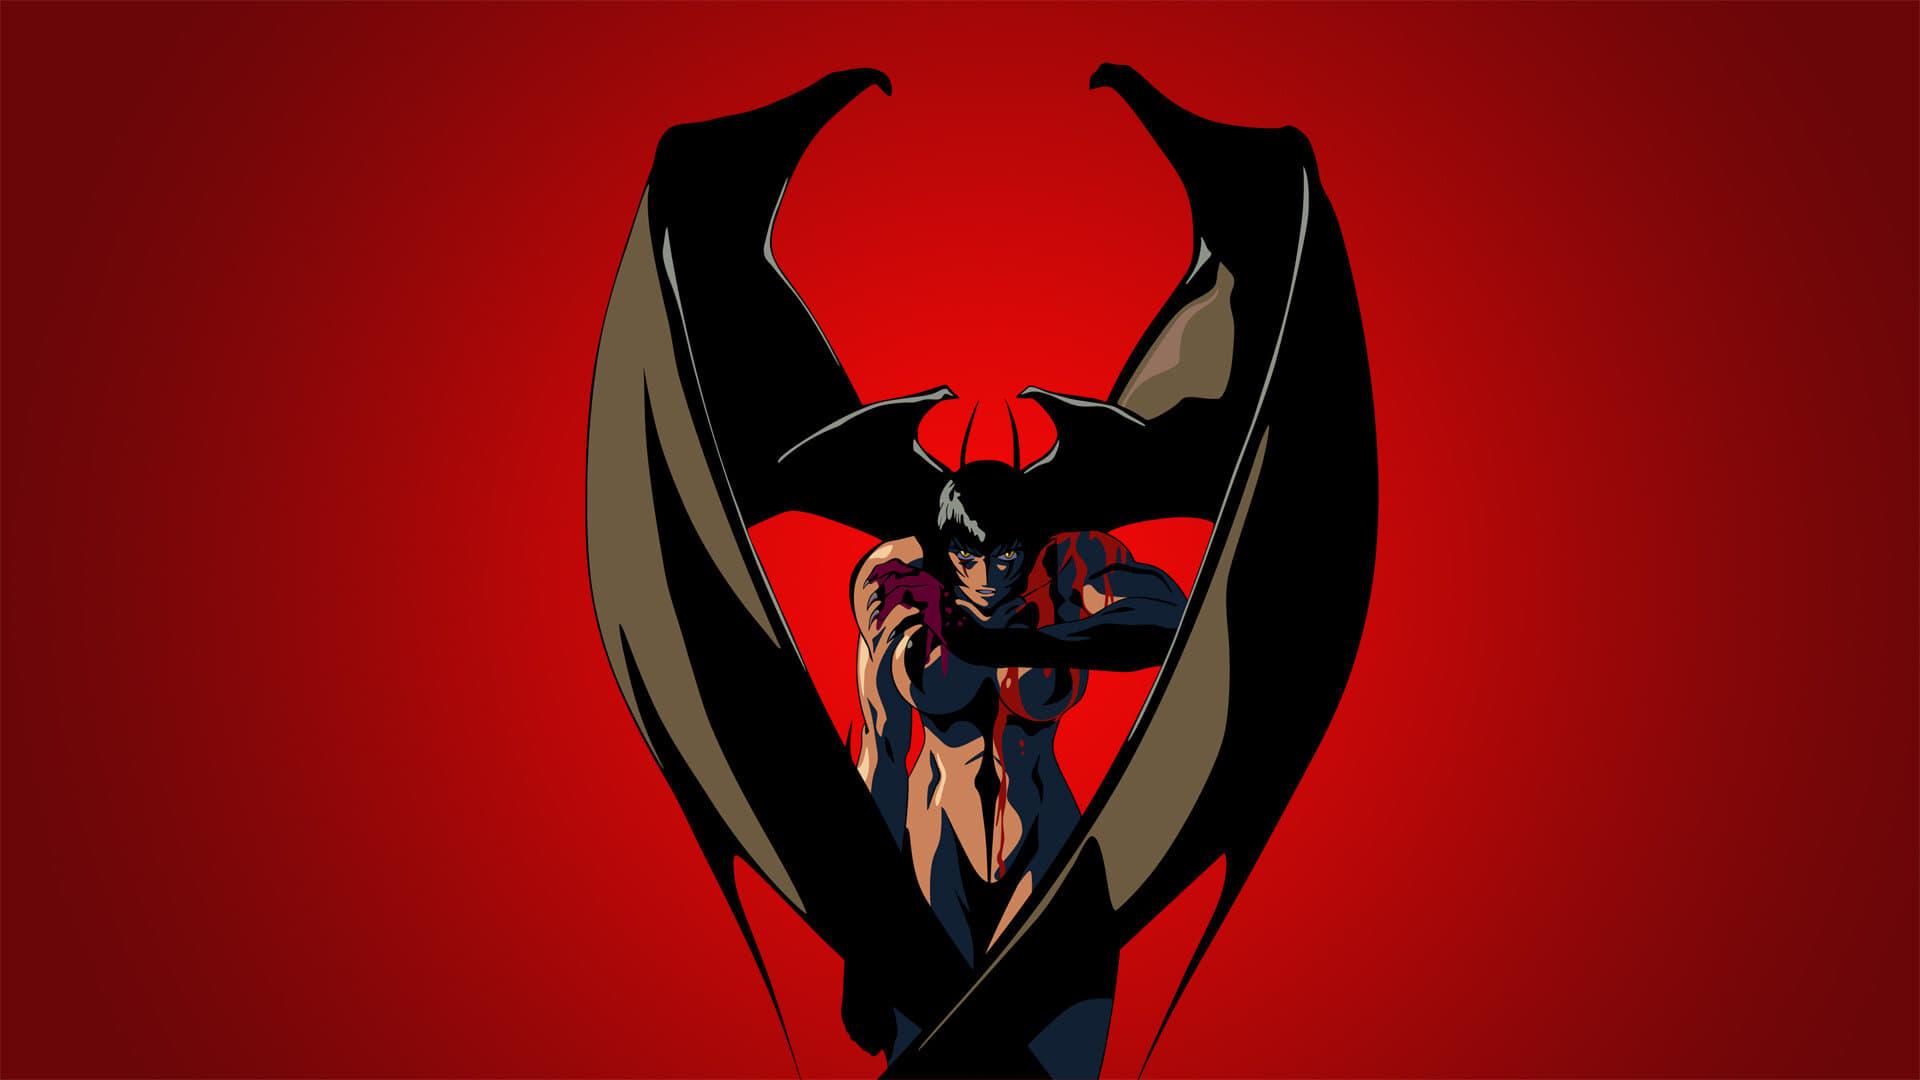 Devil Lady backdrop